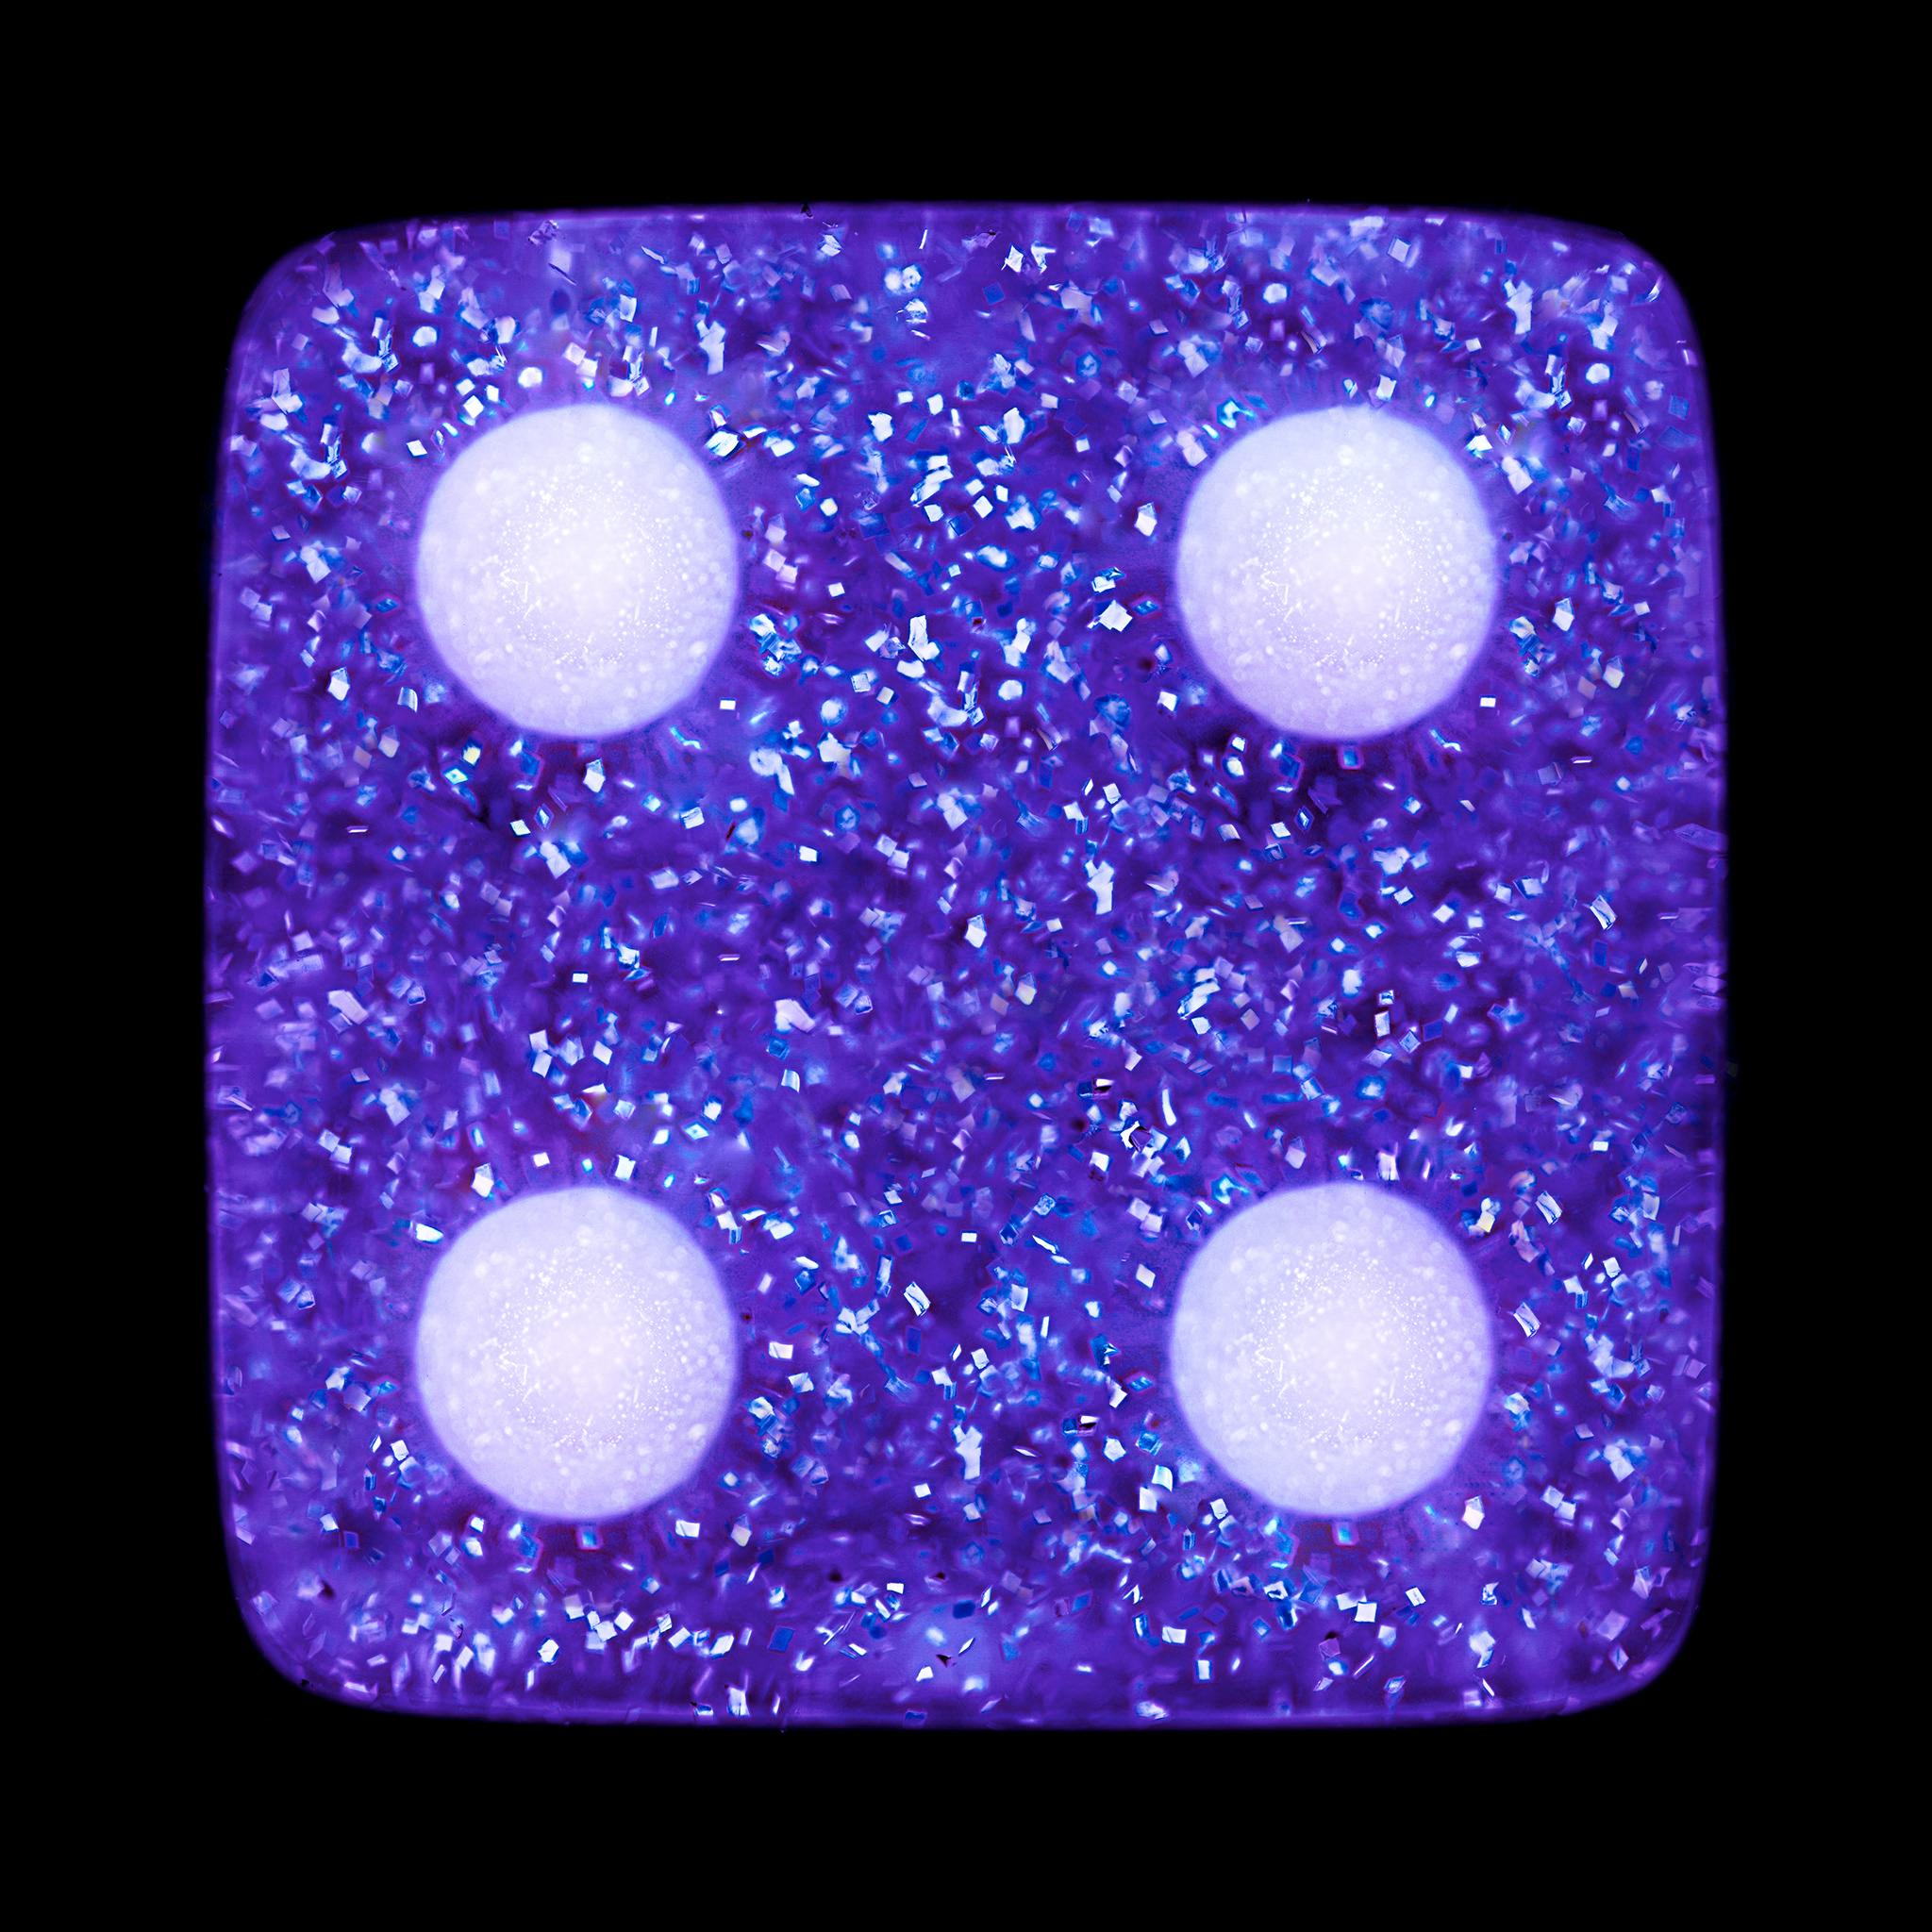 Dice Series Four Purple Sparkles Pop Art Color Photograph